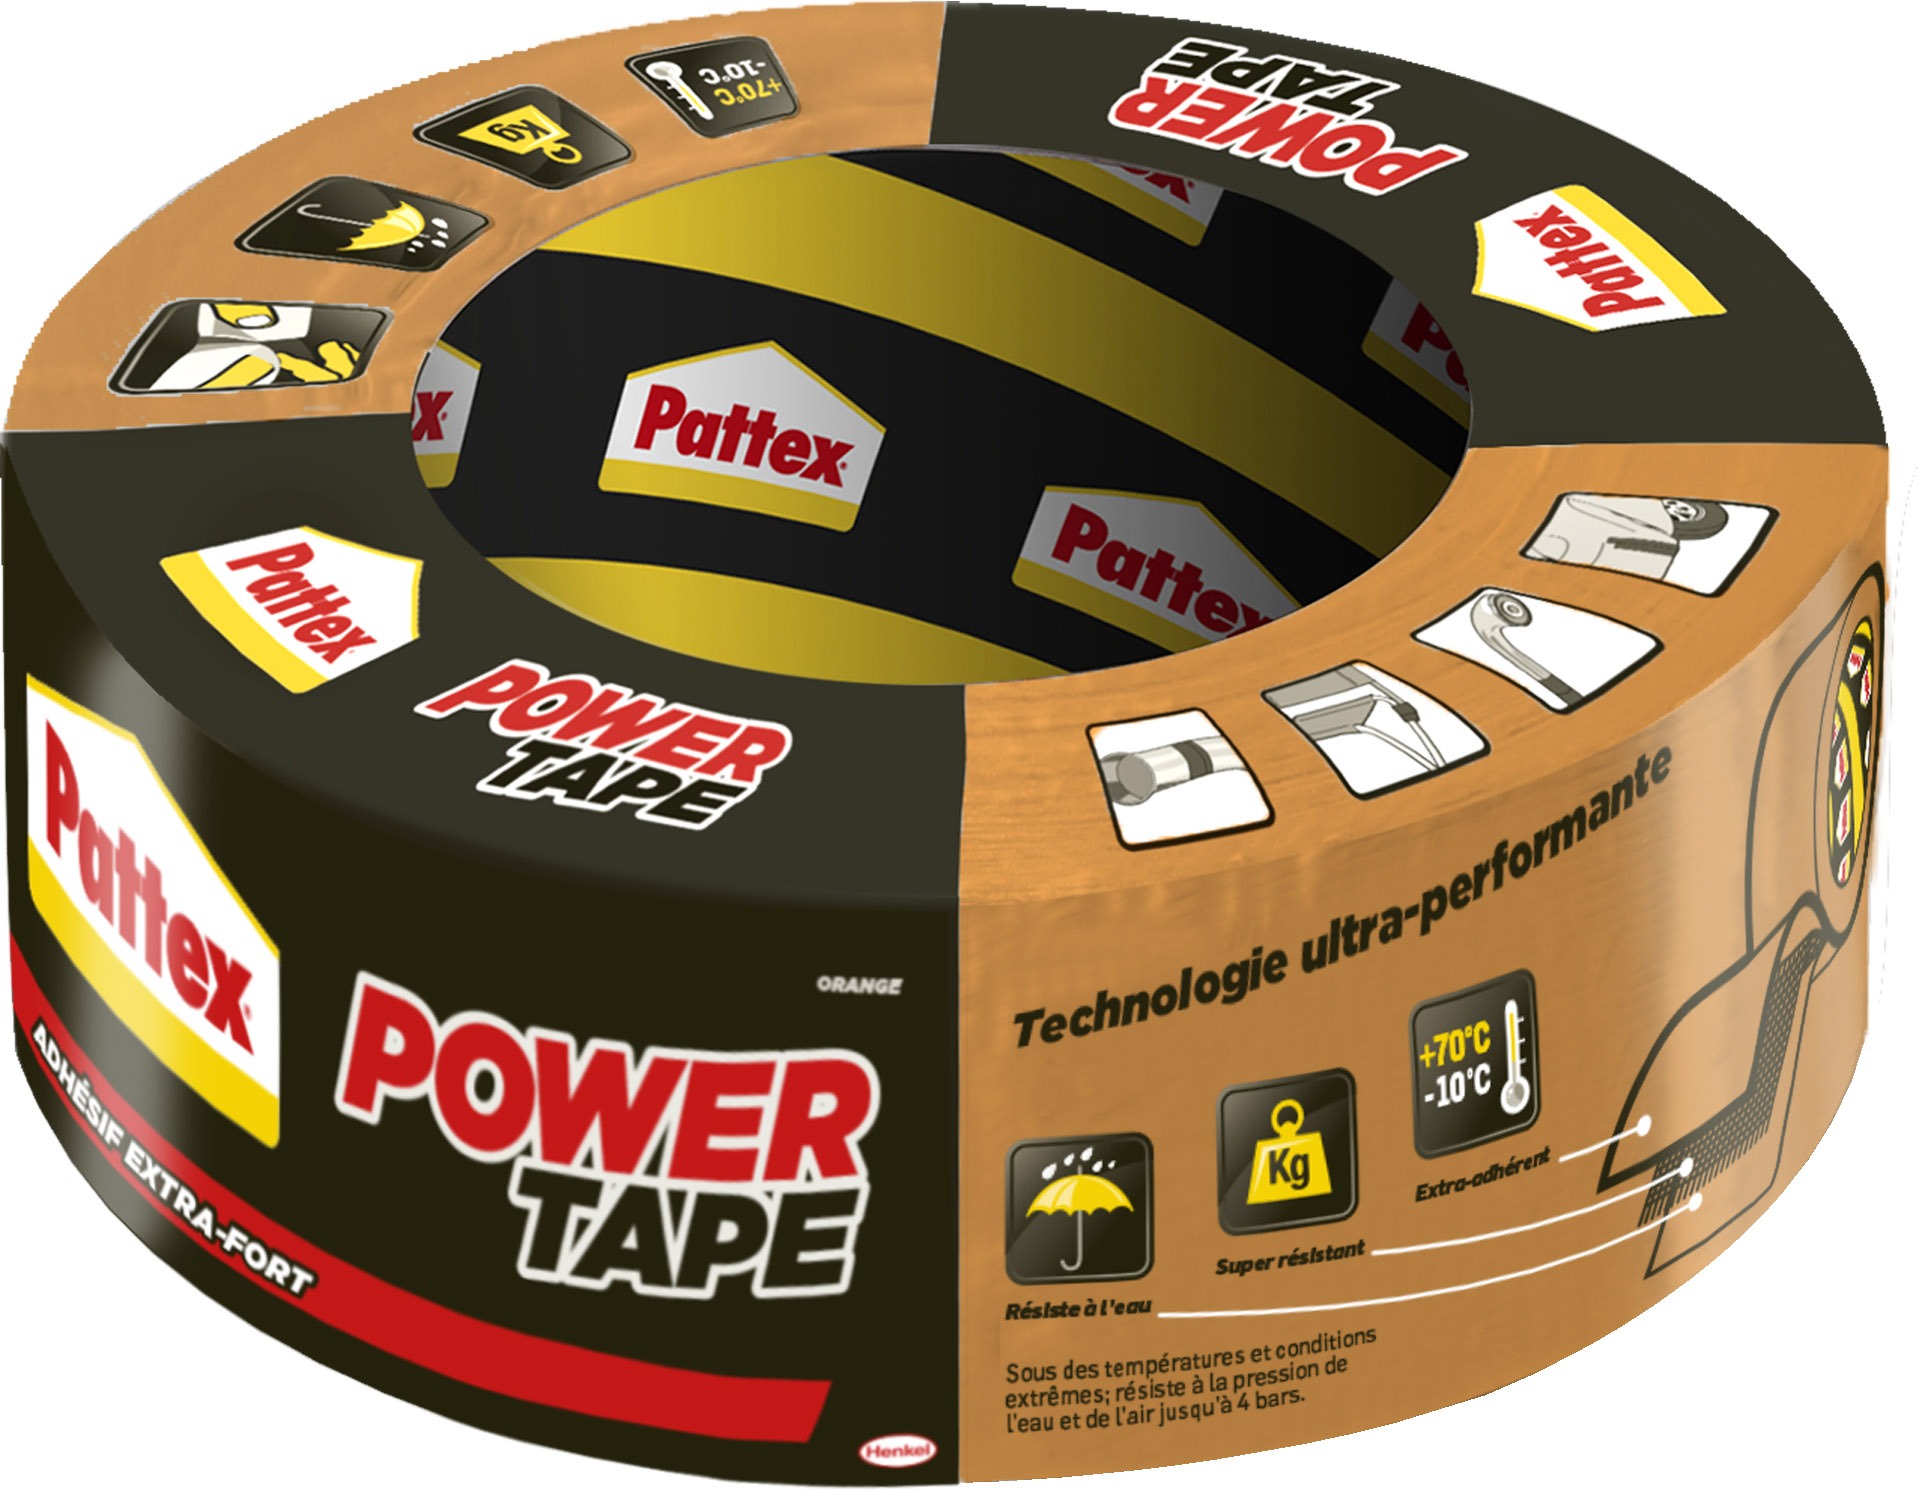 Adhésif Réparation Power Tape Orange 30m - PATTEX